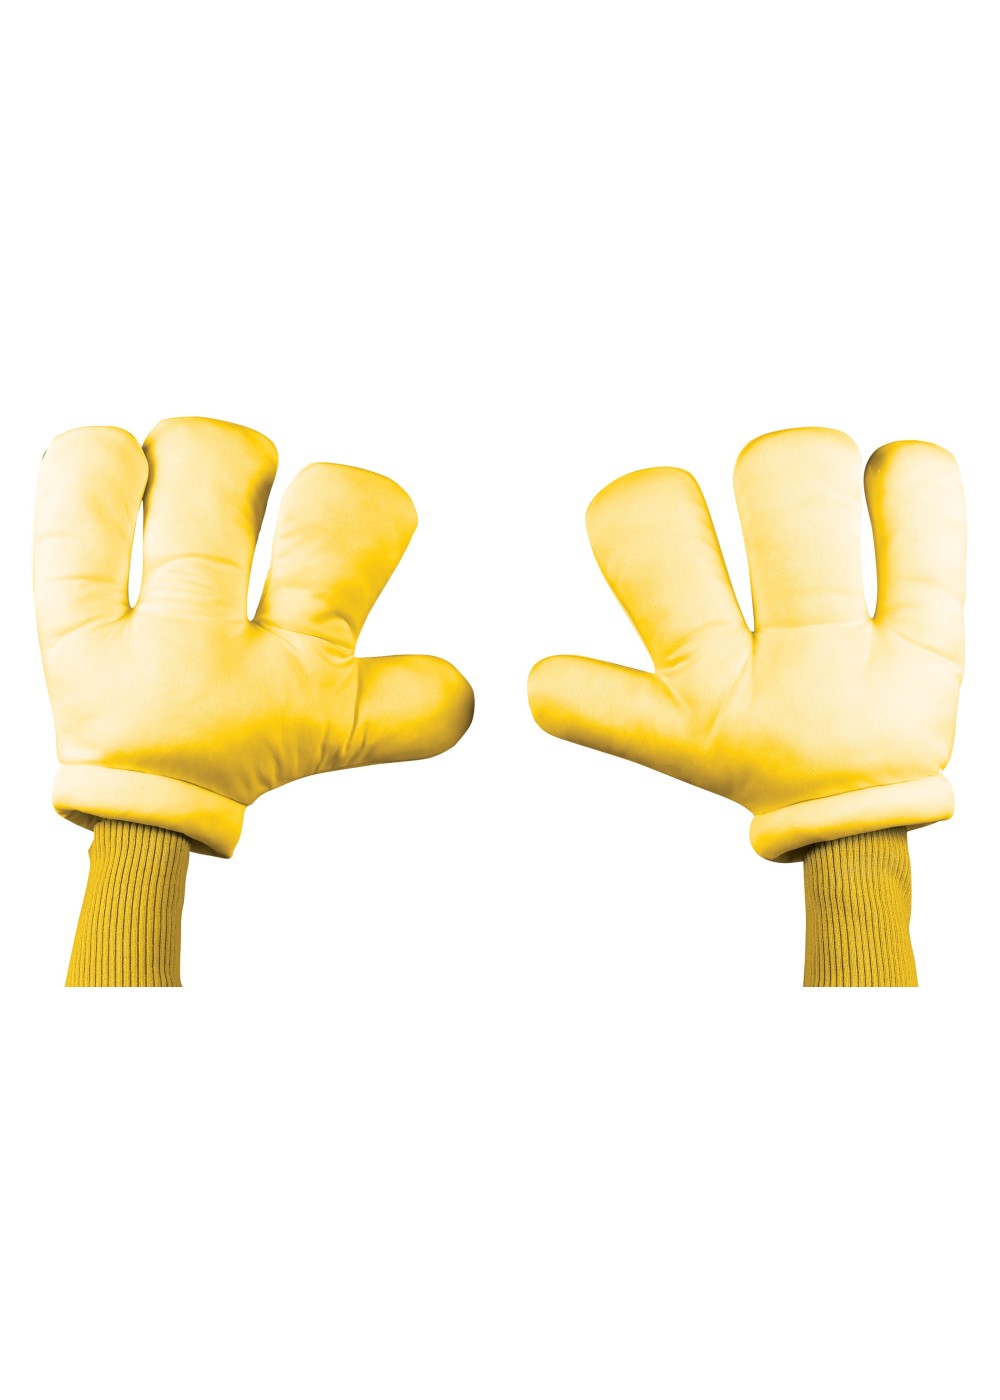 Yellow Cartoon Hands